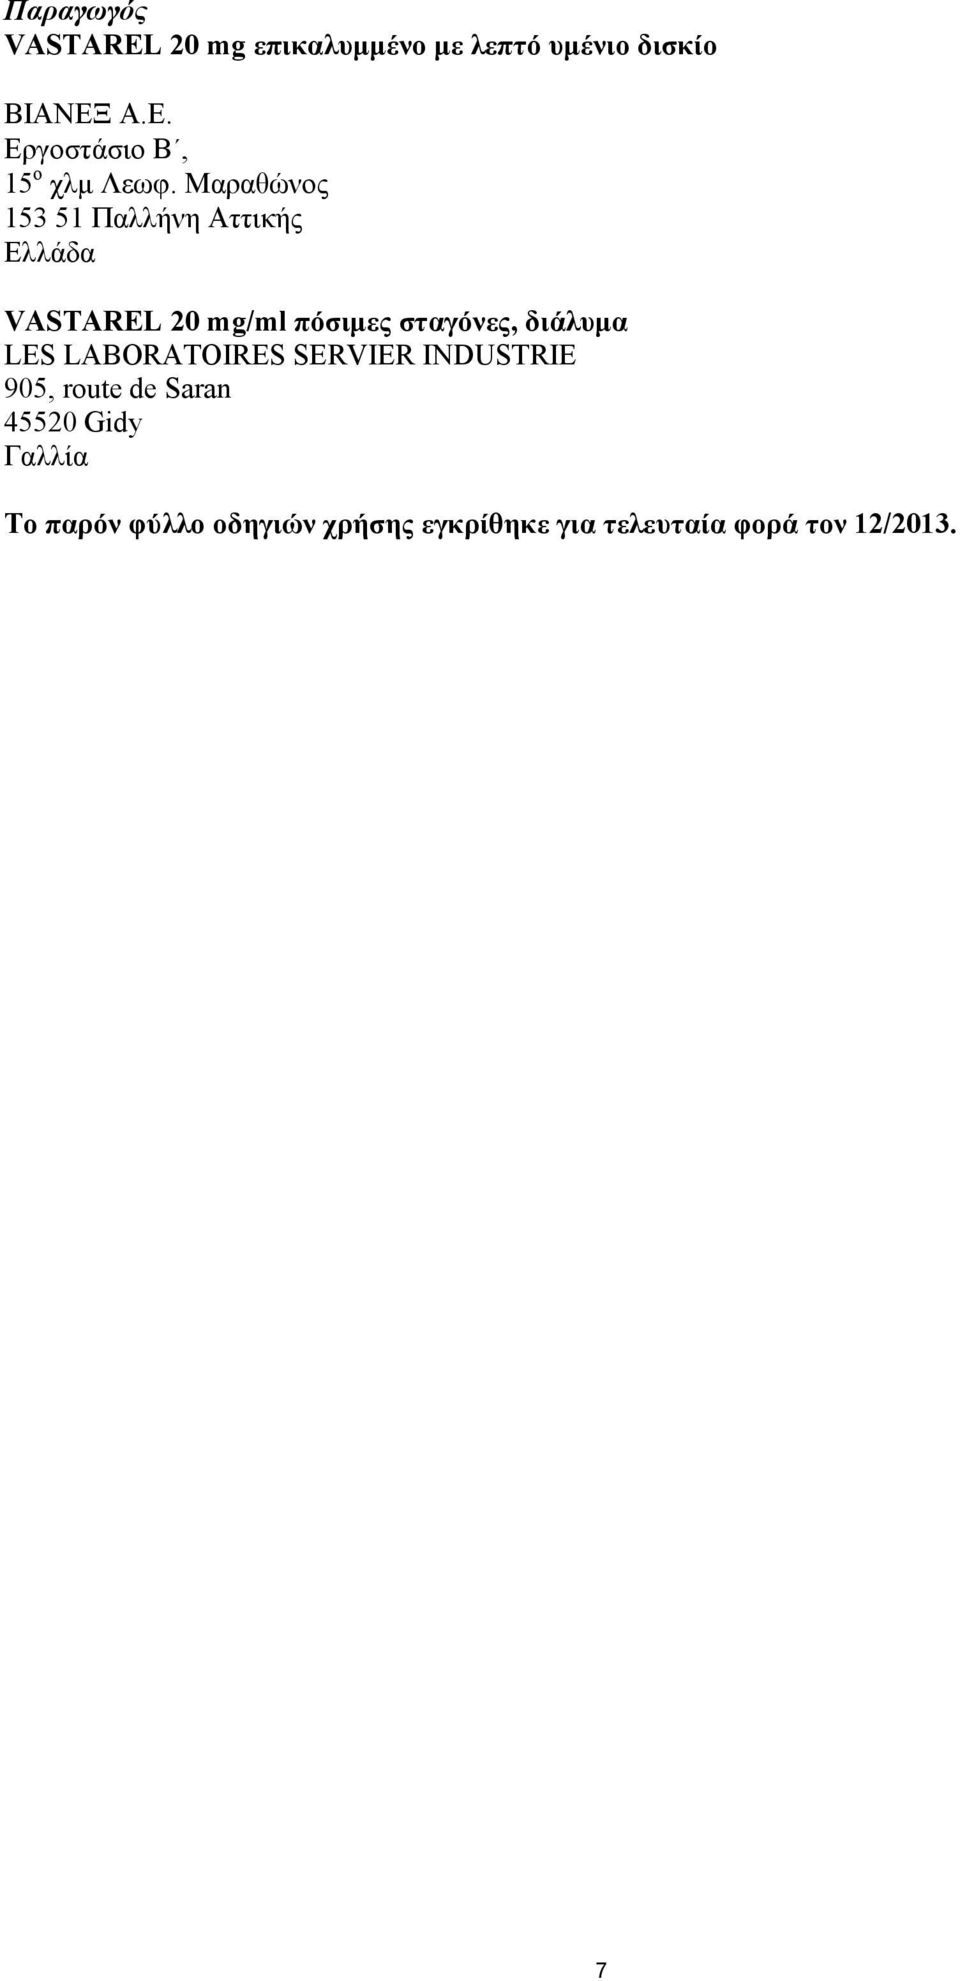 Μαραθώνος 153 51 Παλλήνη Αττικής Ελλάδα VASTAREL 20 mg/ml πόσιμες σταγόνες,